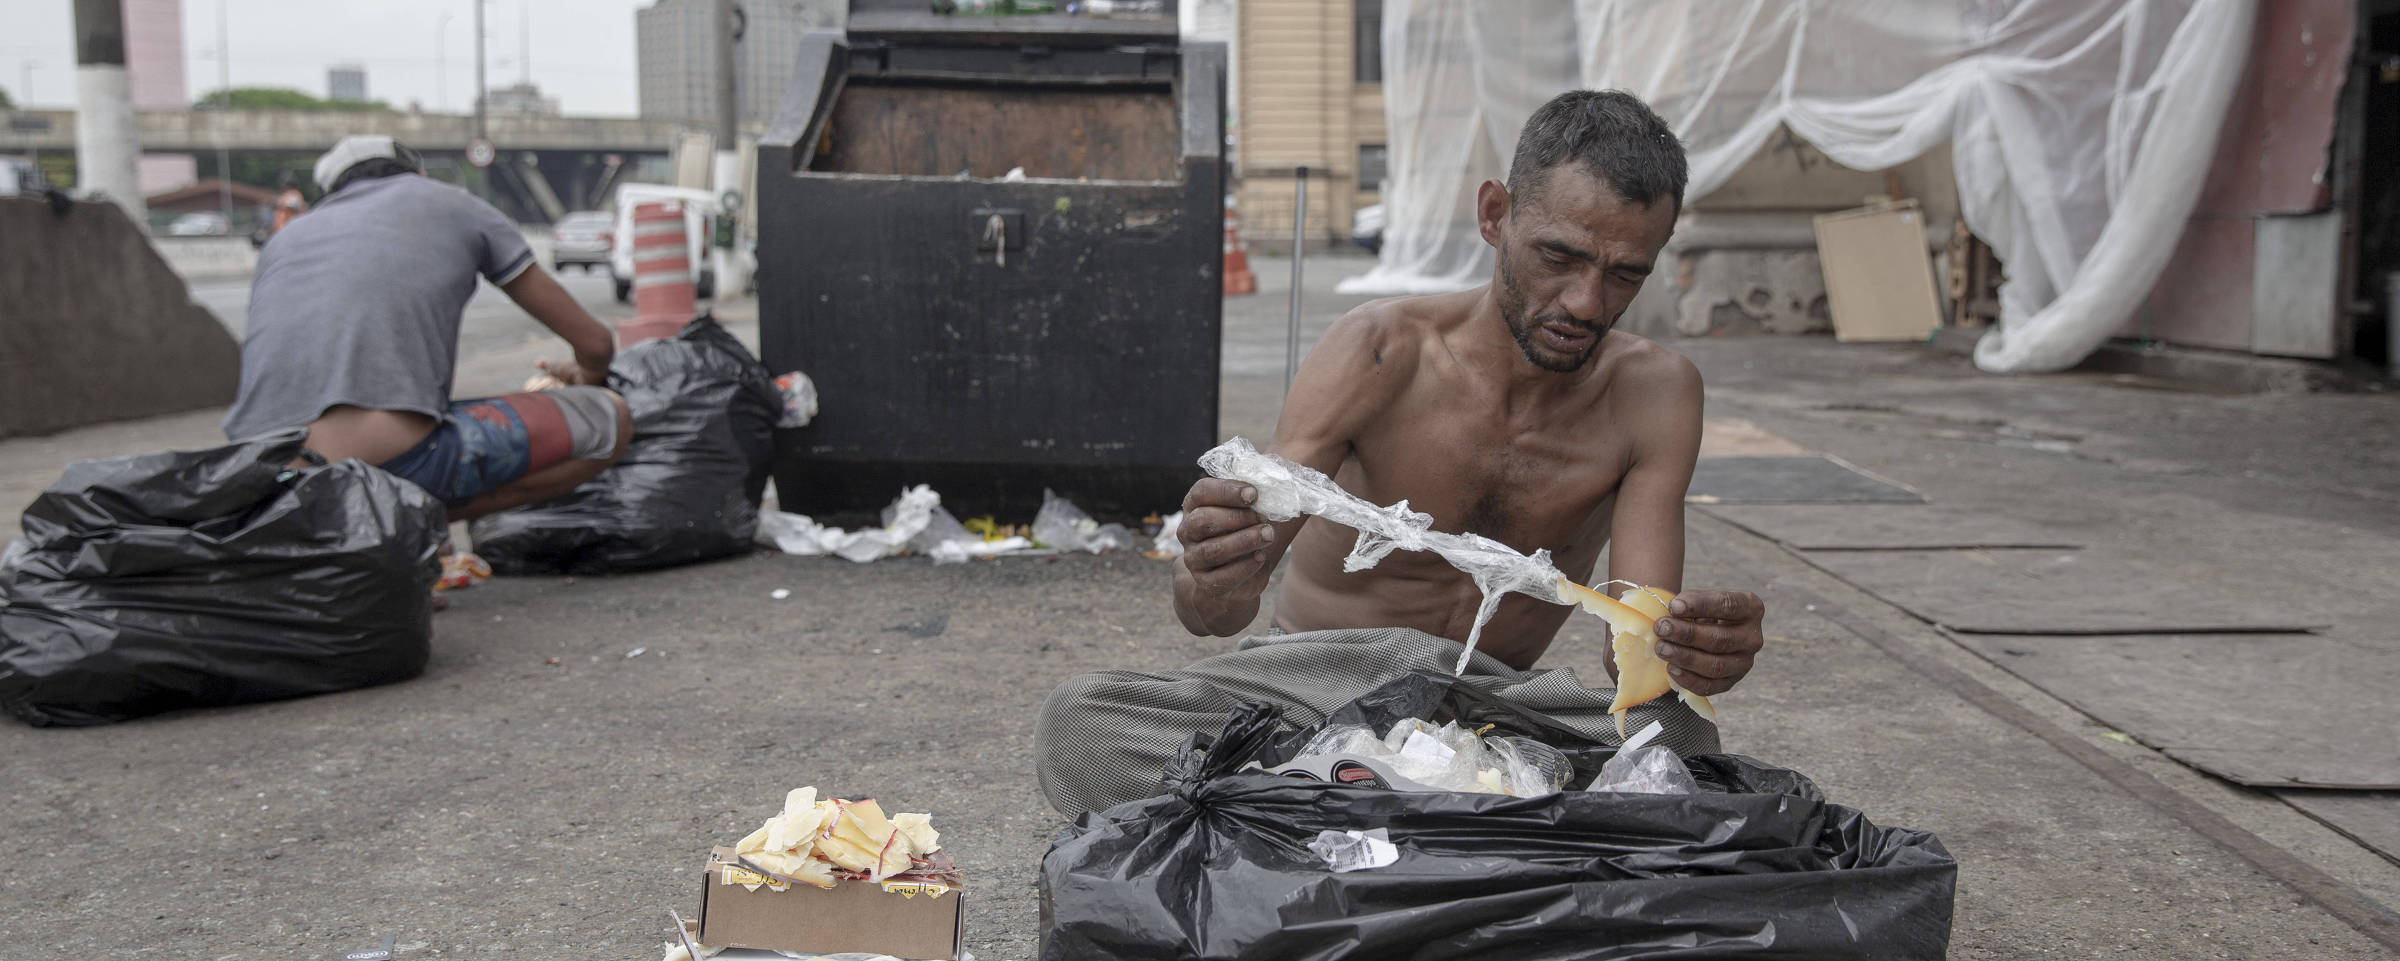 Reginaldo Gonçalves da Silva, de 41 anos, separa comida que iria para o lixo, em São Paulo. Danilo Verpa/Folhapress